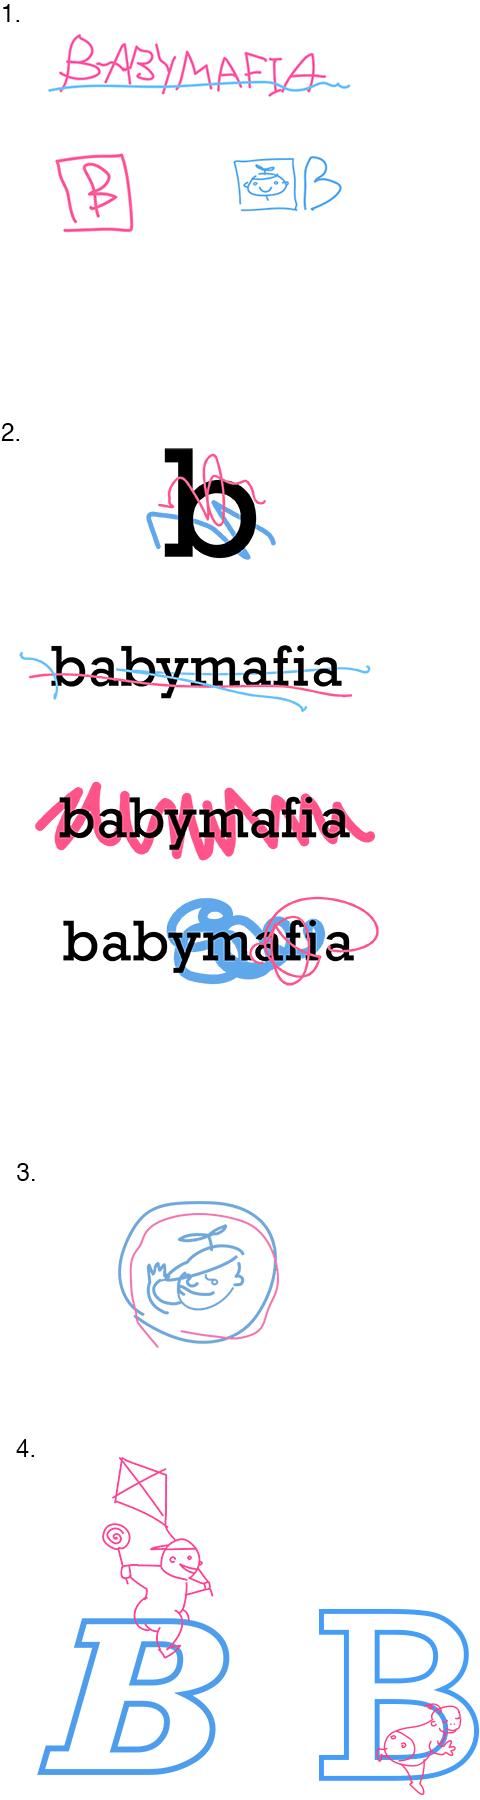 babymafia process 02